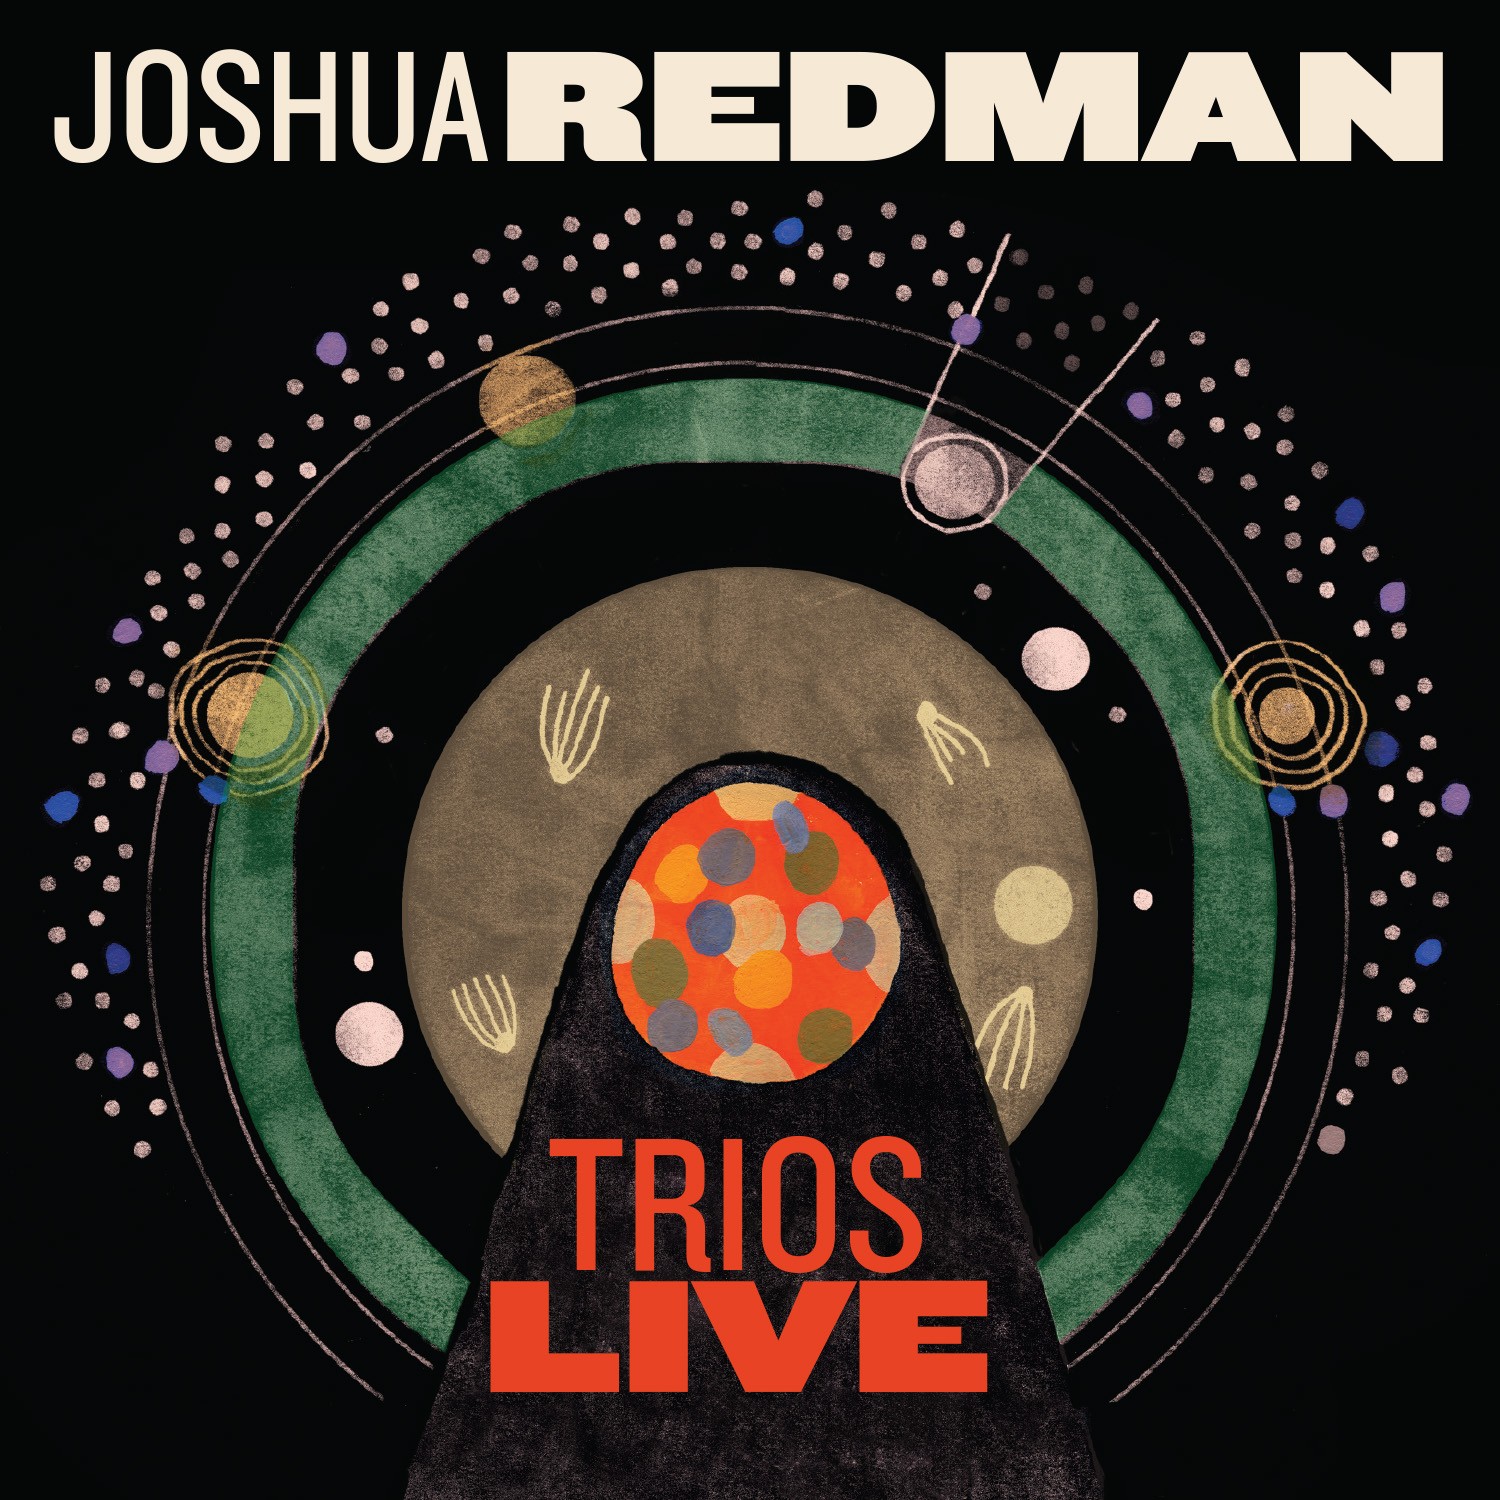 JOSHUA REDMAN - Trios Live cover 